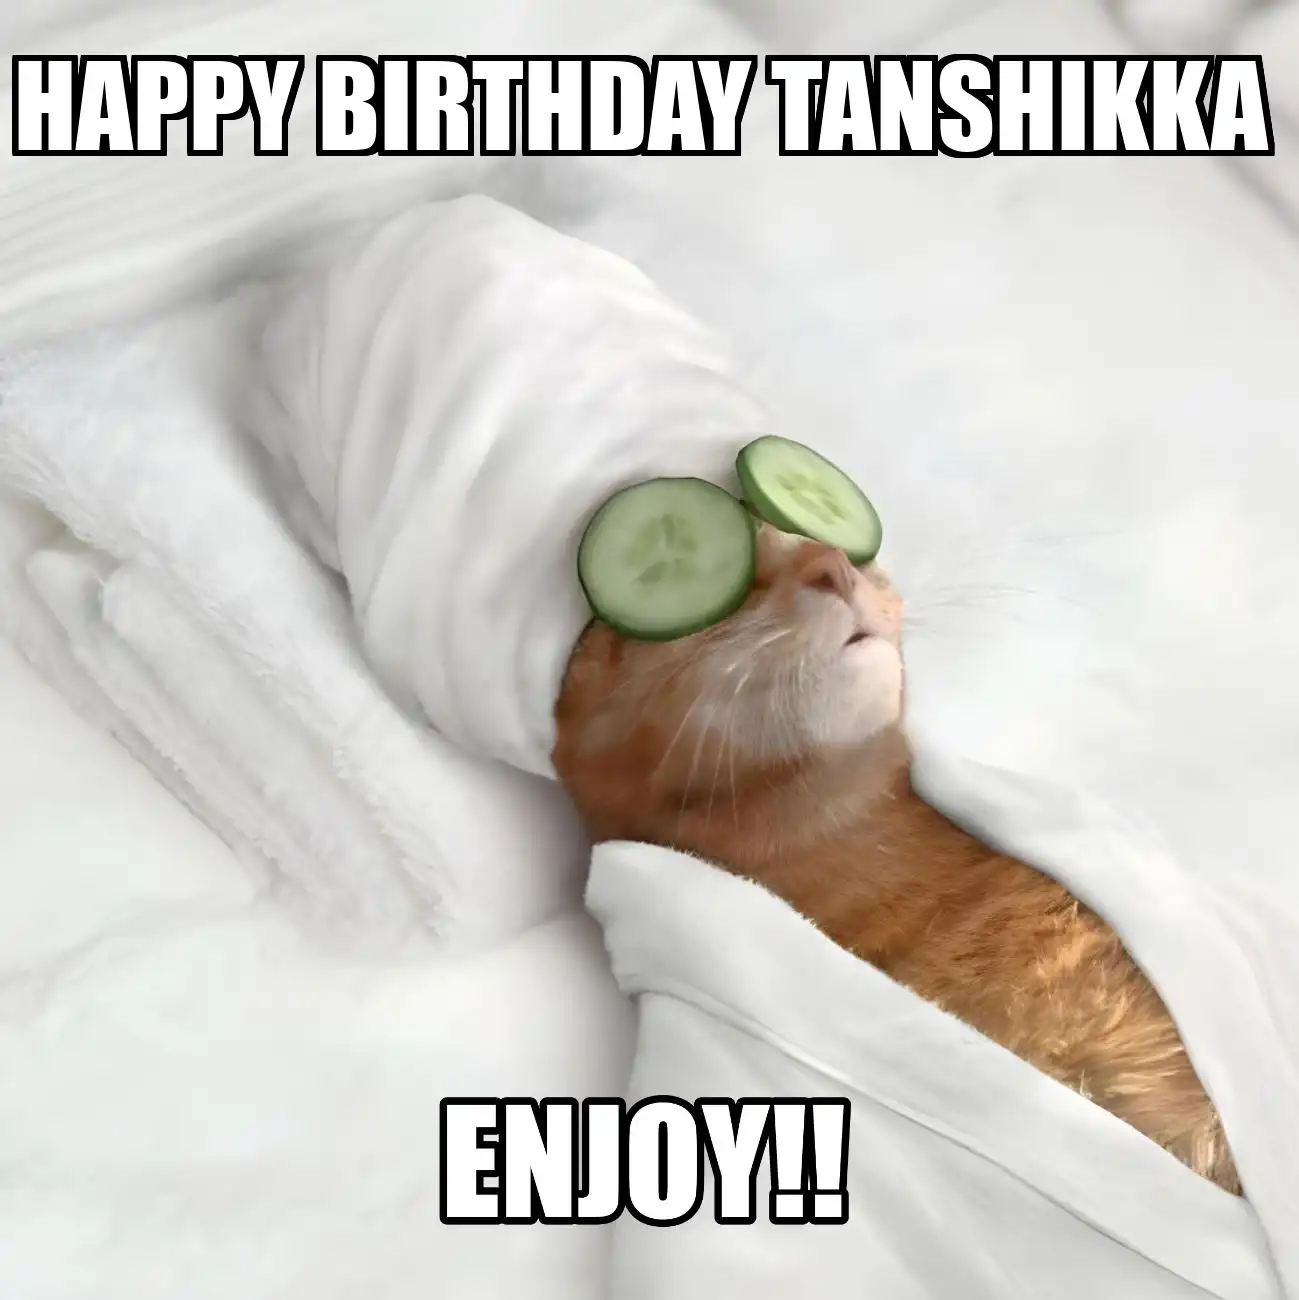 Happy Birthday Tanshikka Enjoy Cat Meme